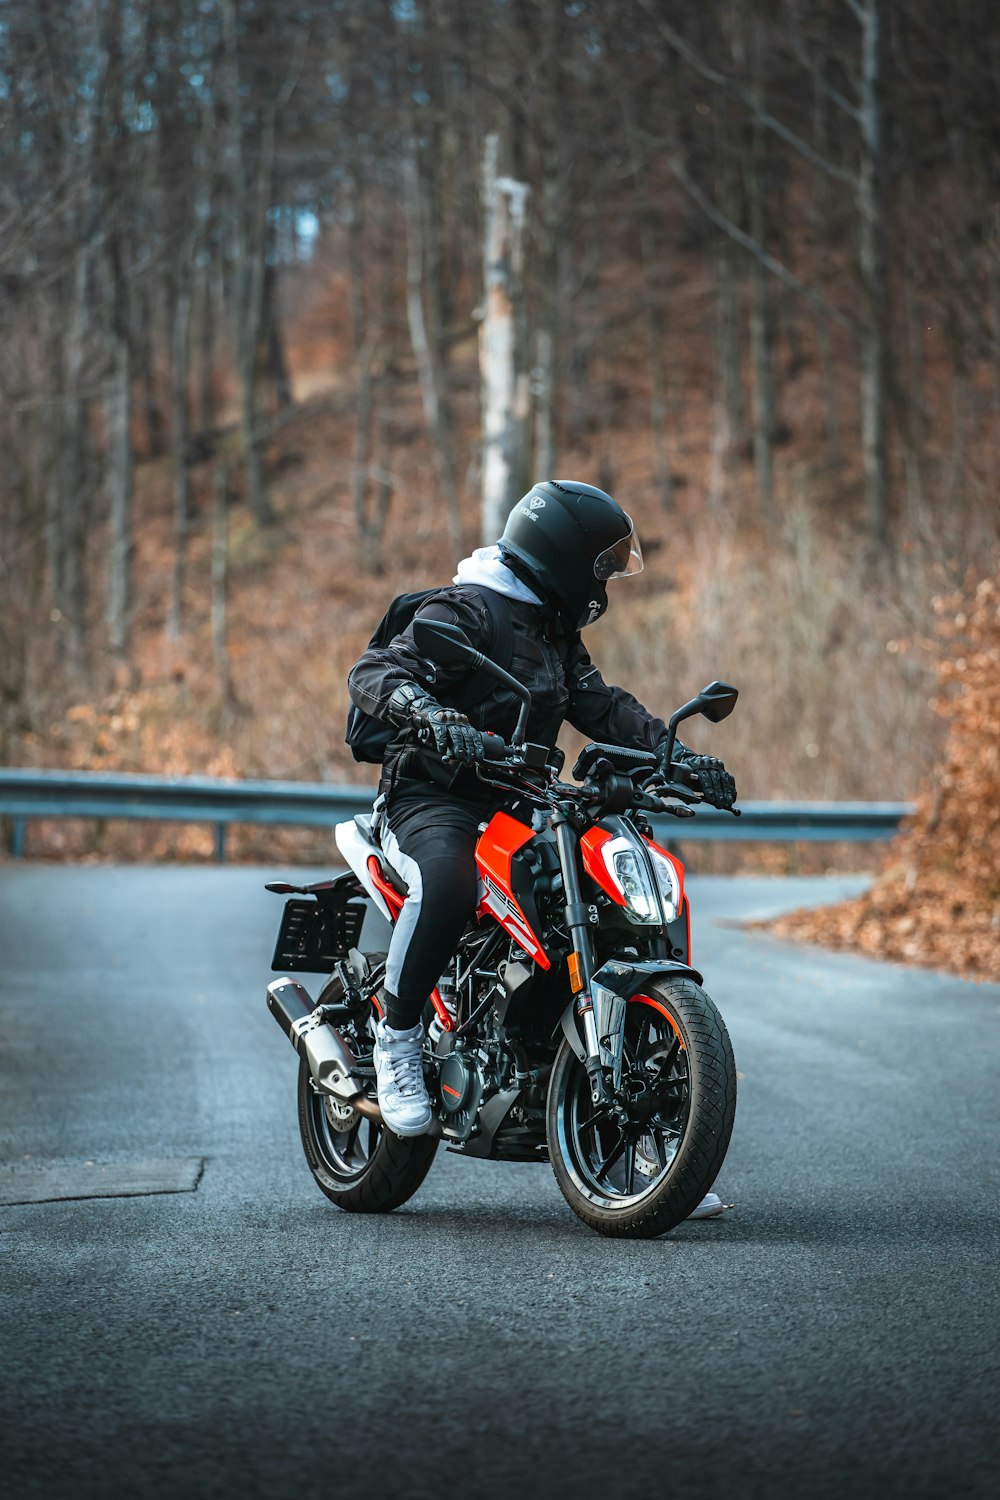 Hombre con chaqueta negra montando motocicleta naranja y negra en la carretera durante el día